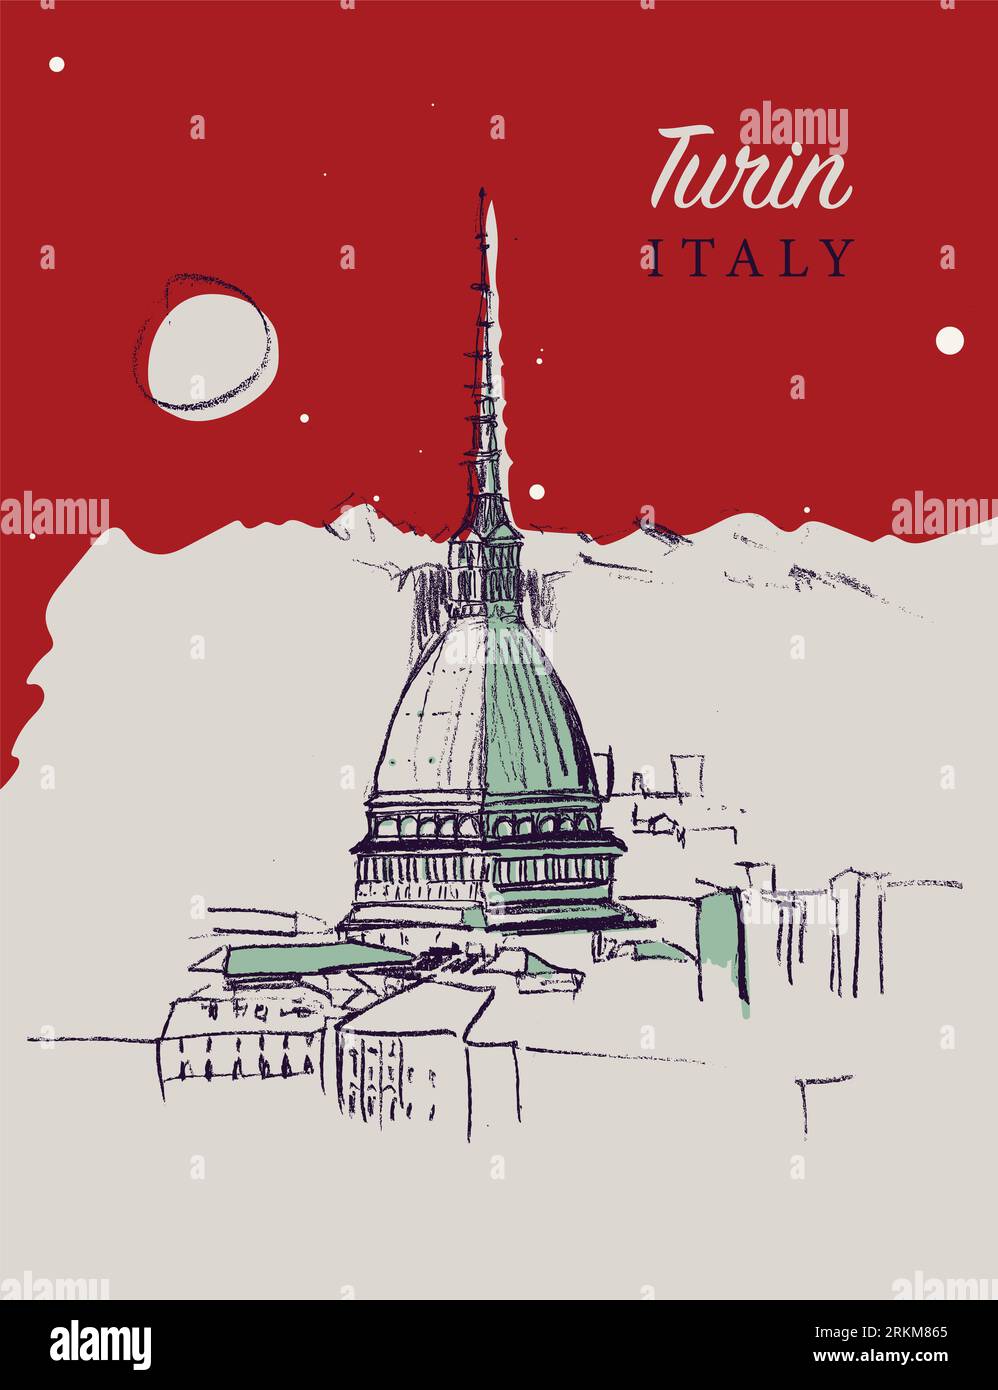 Handgezeichnete Vektor-Skizzenillustration der Stadt Turin im Piemont in Italien. Stockfoto